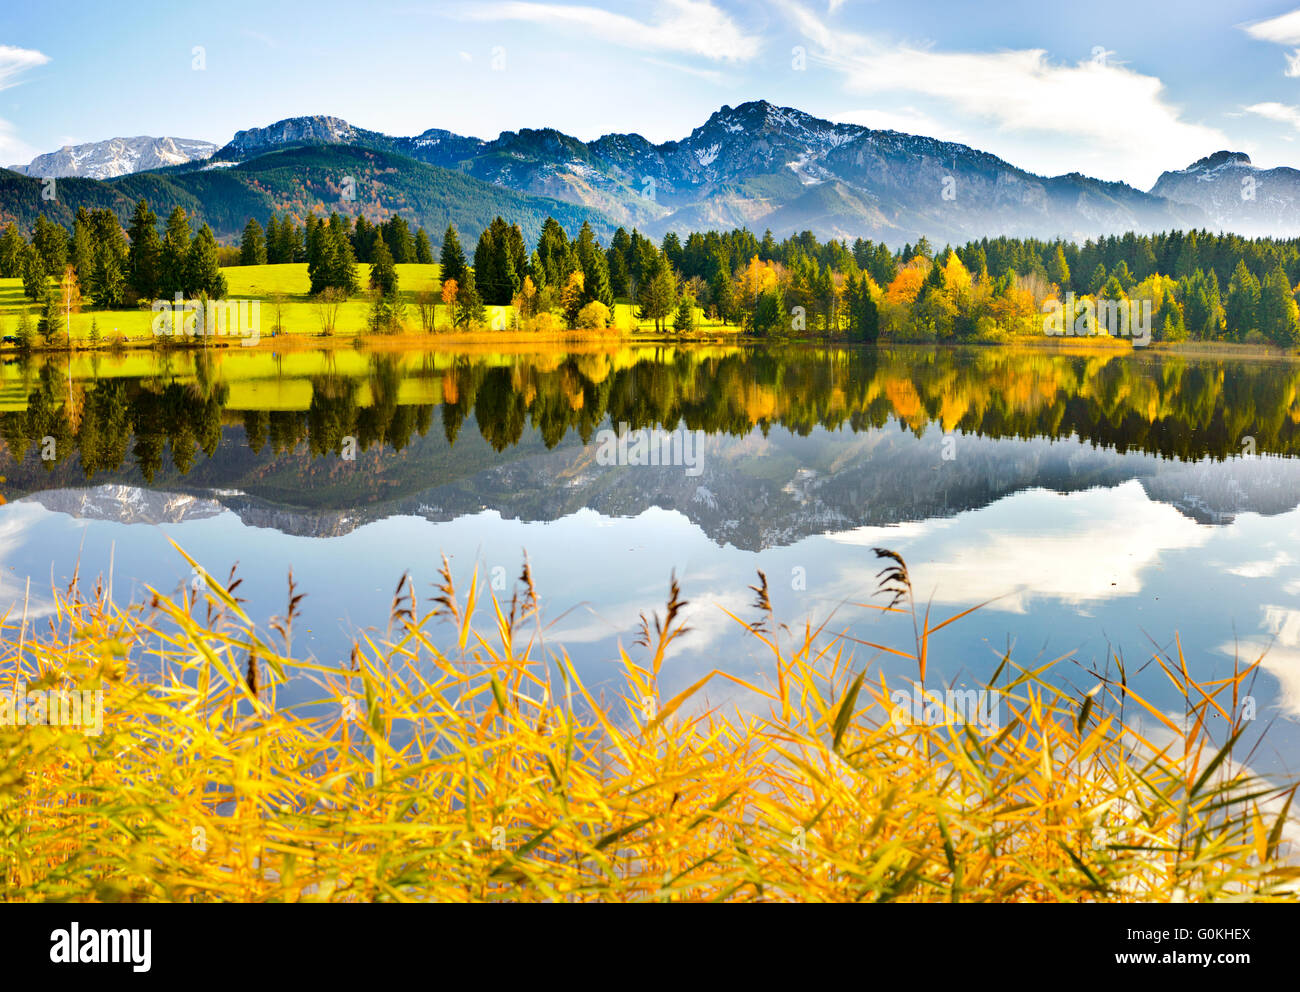 Paisaje Panorámico en Baviera, con el lago y las montañas de los Alpes Foto de stock